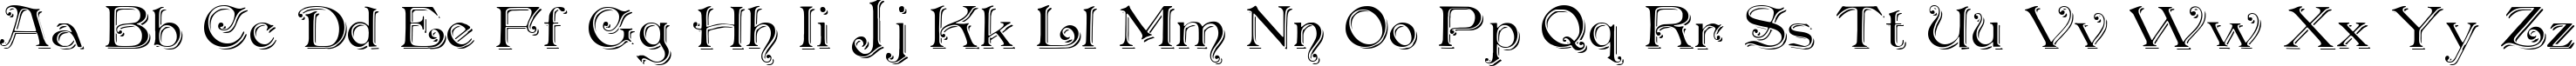 Пример написания английского алфавита шрифтом Penshurst_Shadow